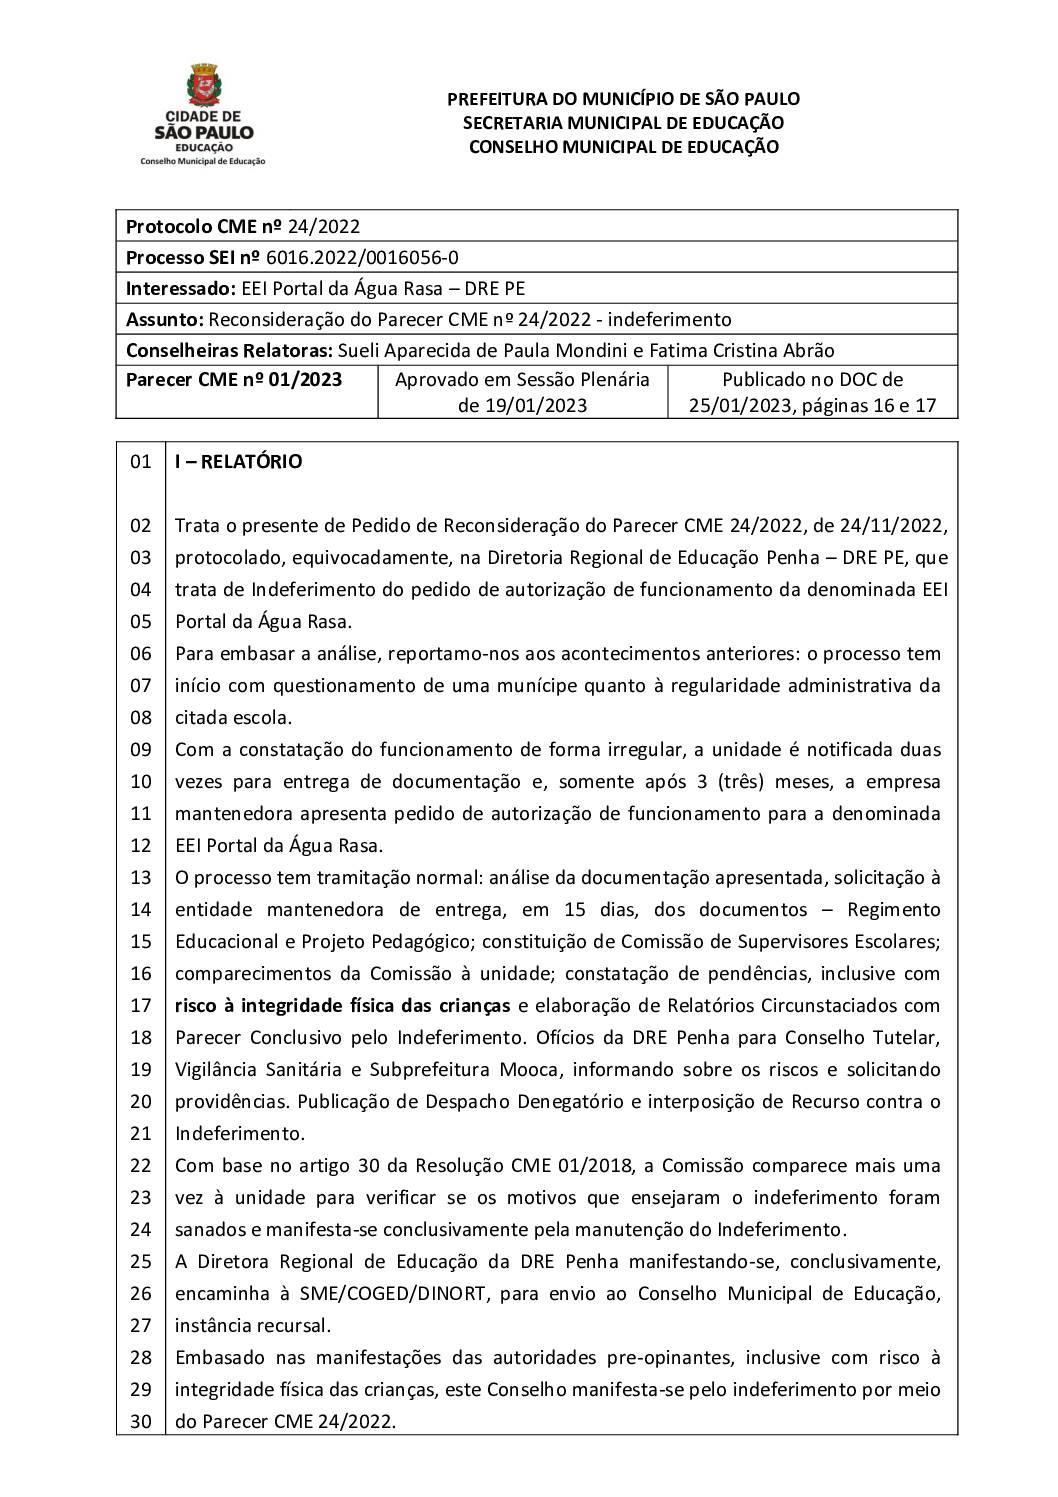 Parecer CME nº 01/2023 -  EEI Portal da Água Rasa (DRE PE)  - Reconsideração do Parecer CME nº 24/2022 - indeferimento 